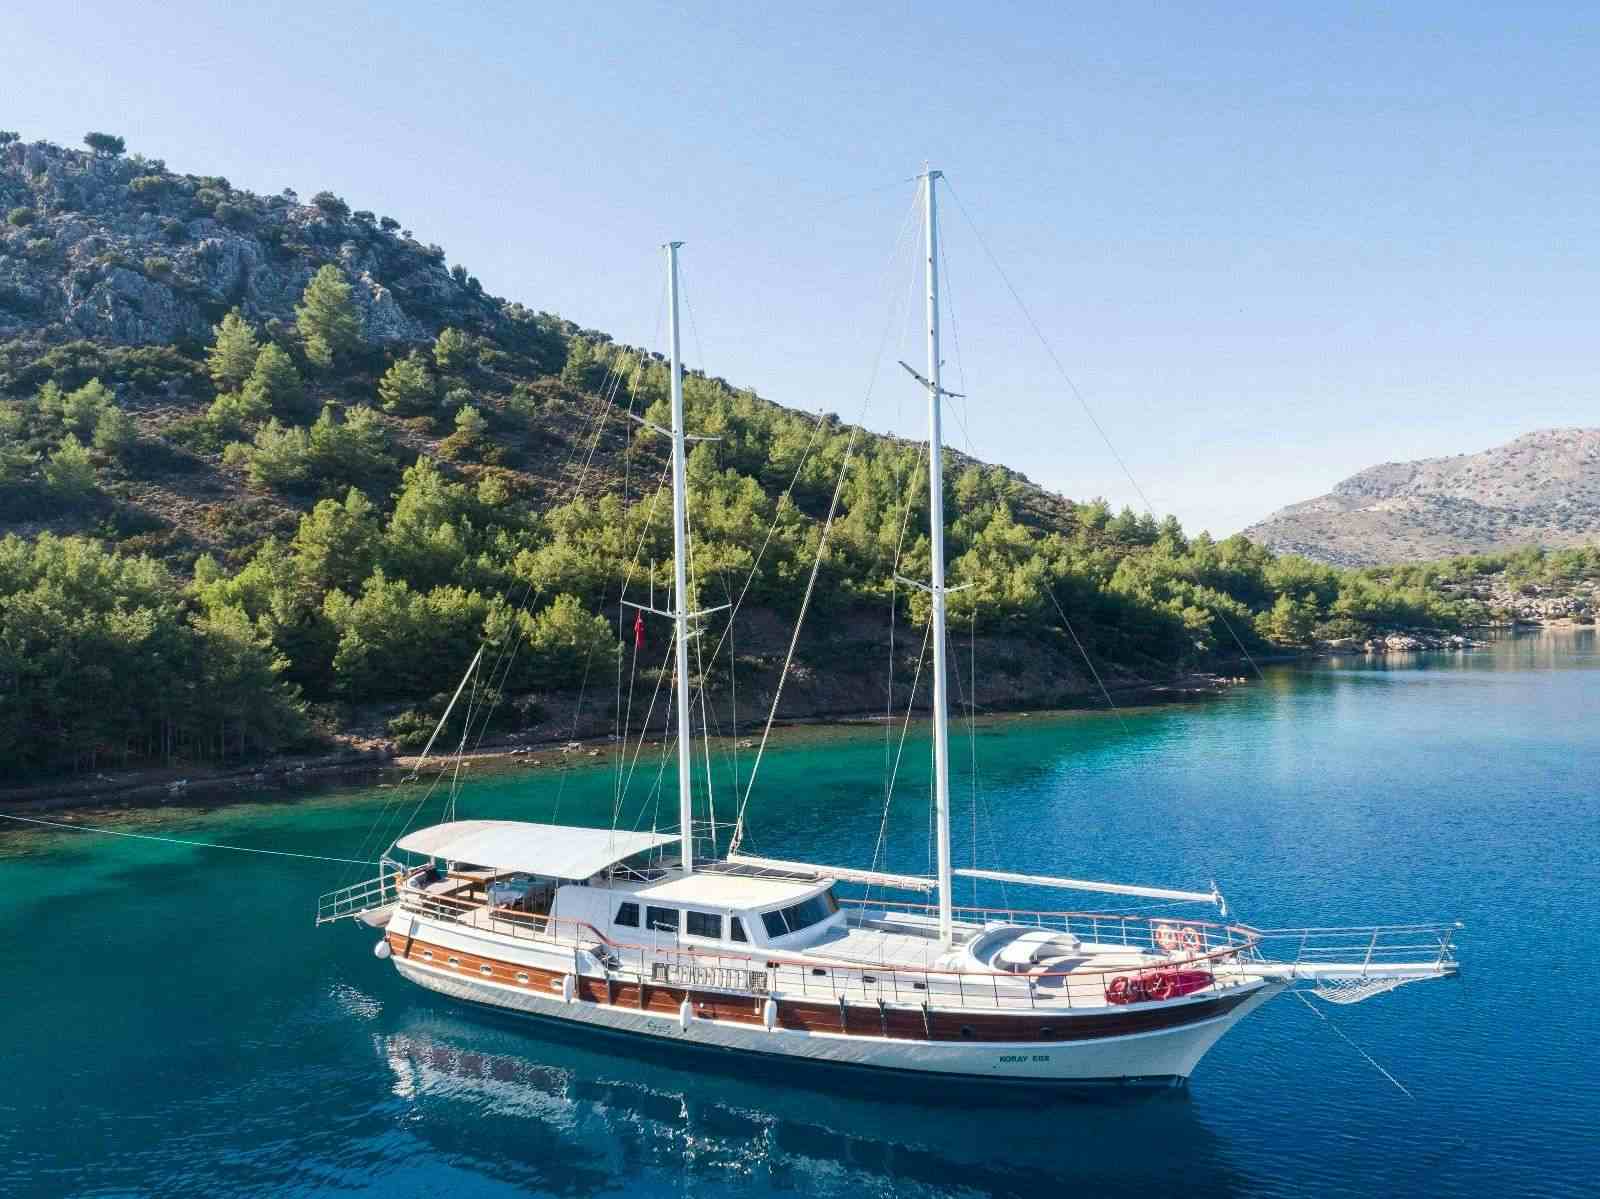 koray ege - Yacht Charter Rhodes & Boat hire in Greece & Turkey 1